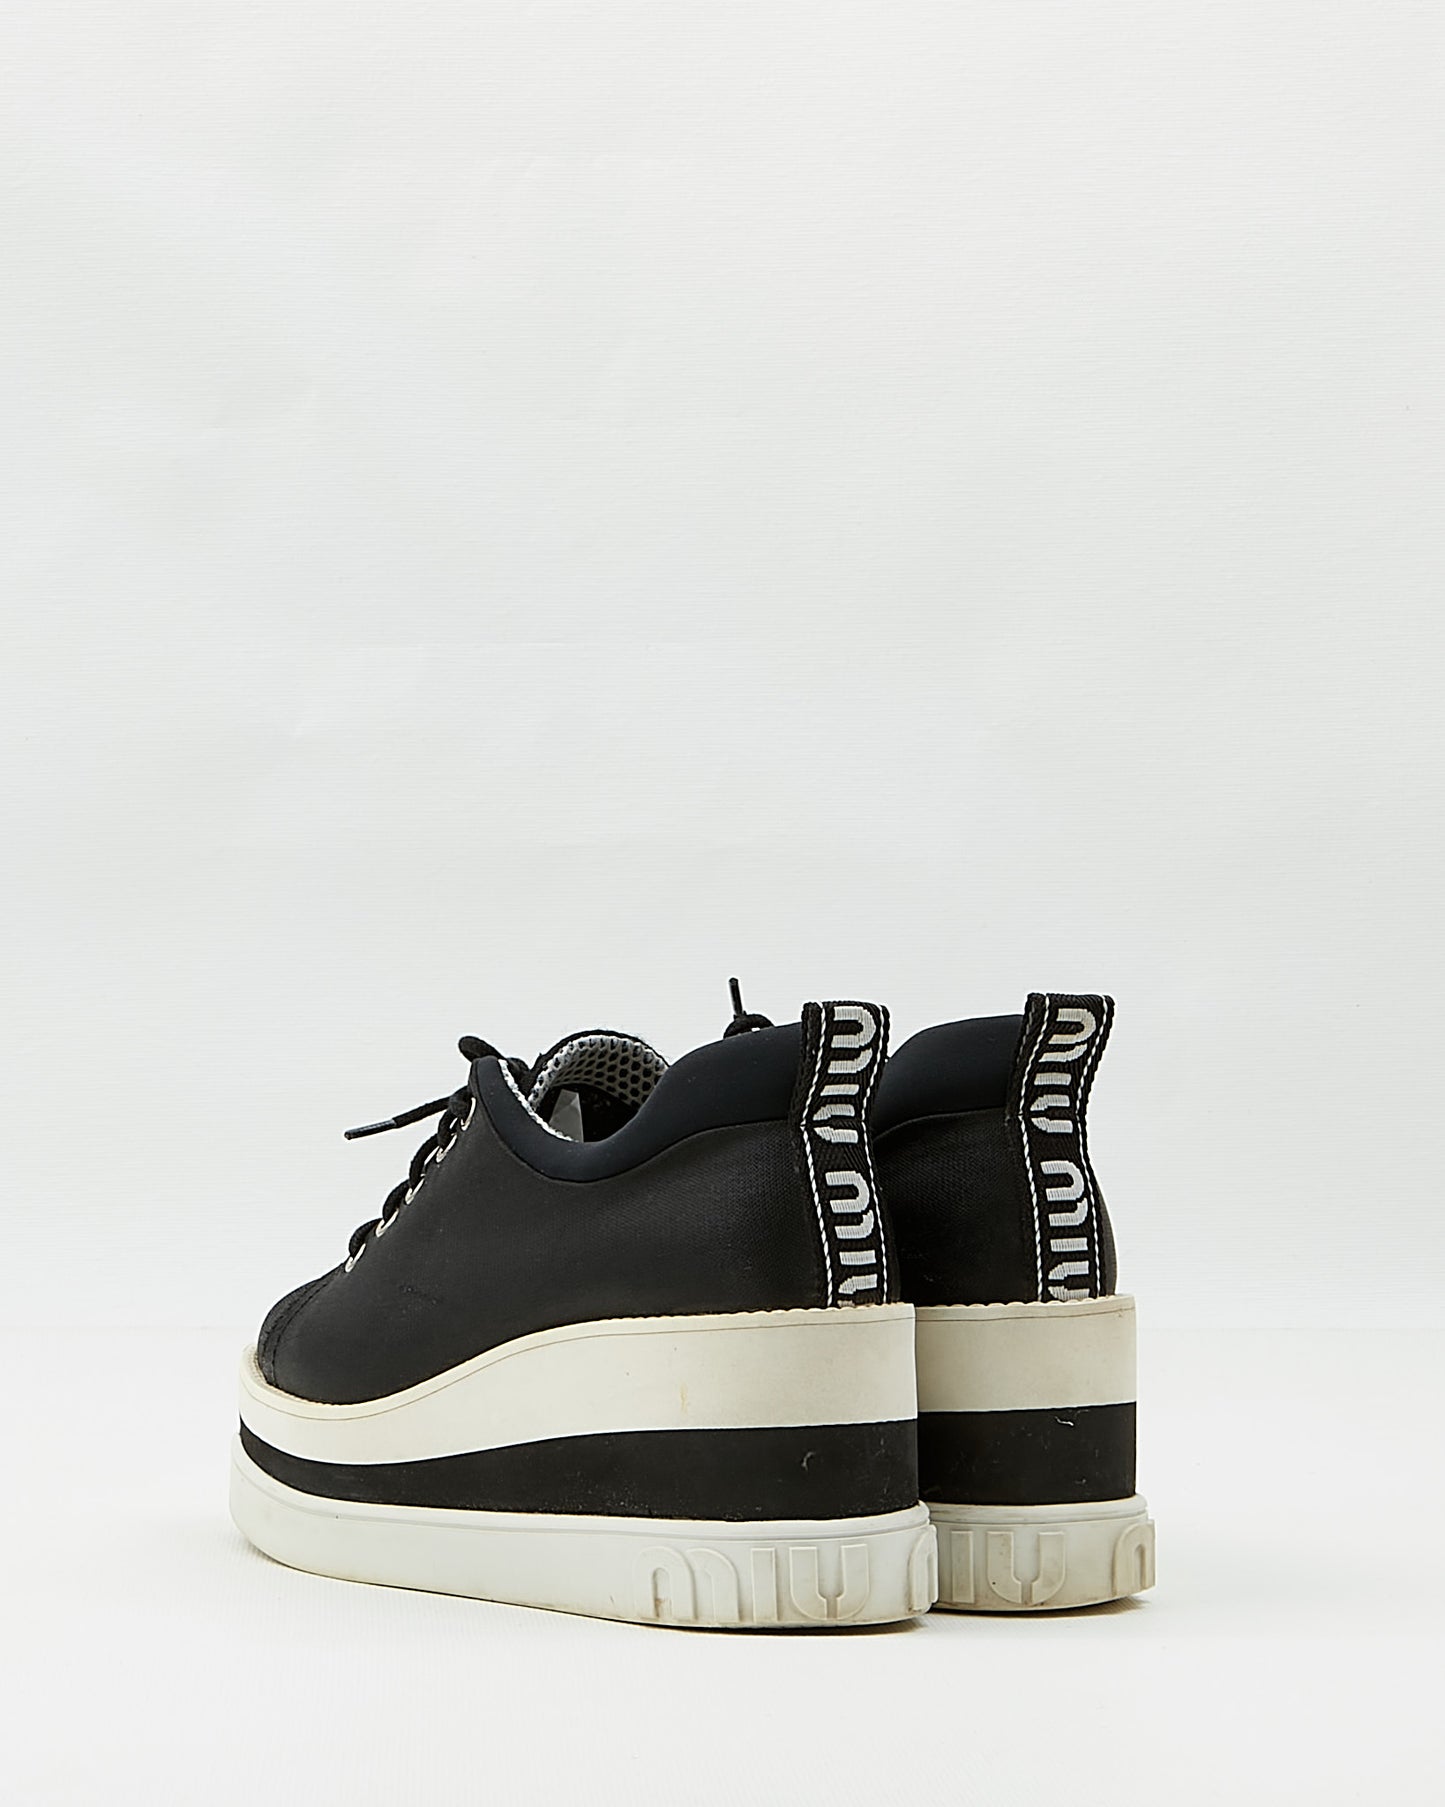 Miu Miu Black Fabric Lace Up Platform Sneakers - 38